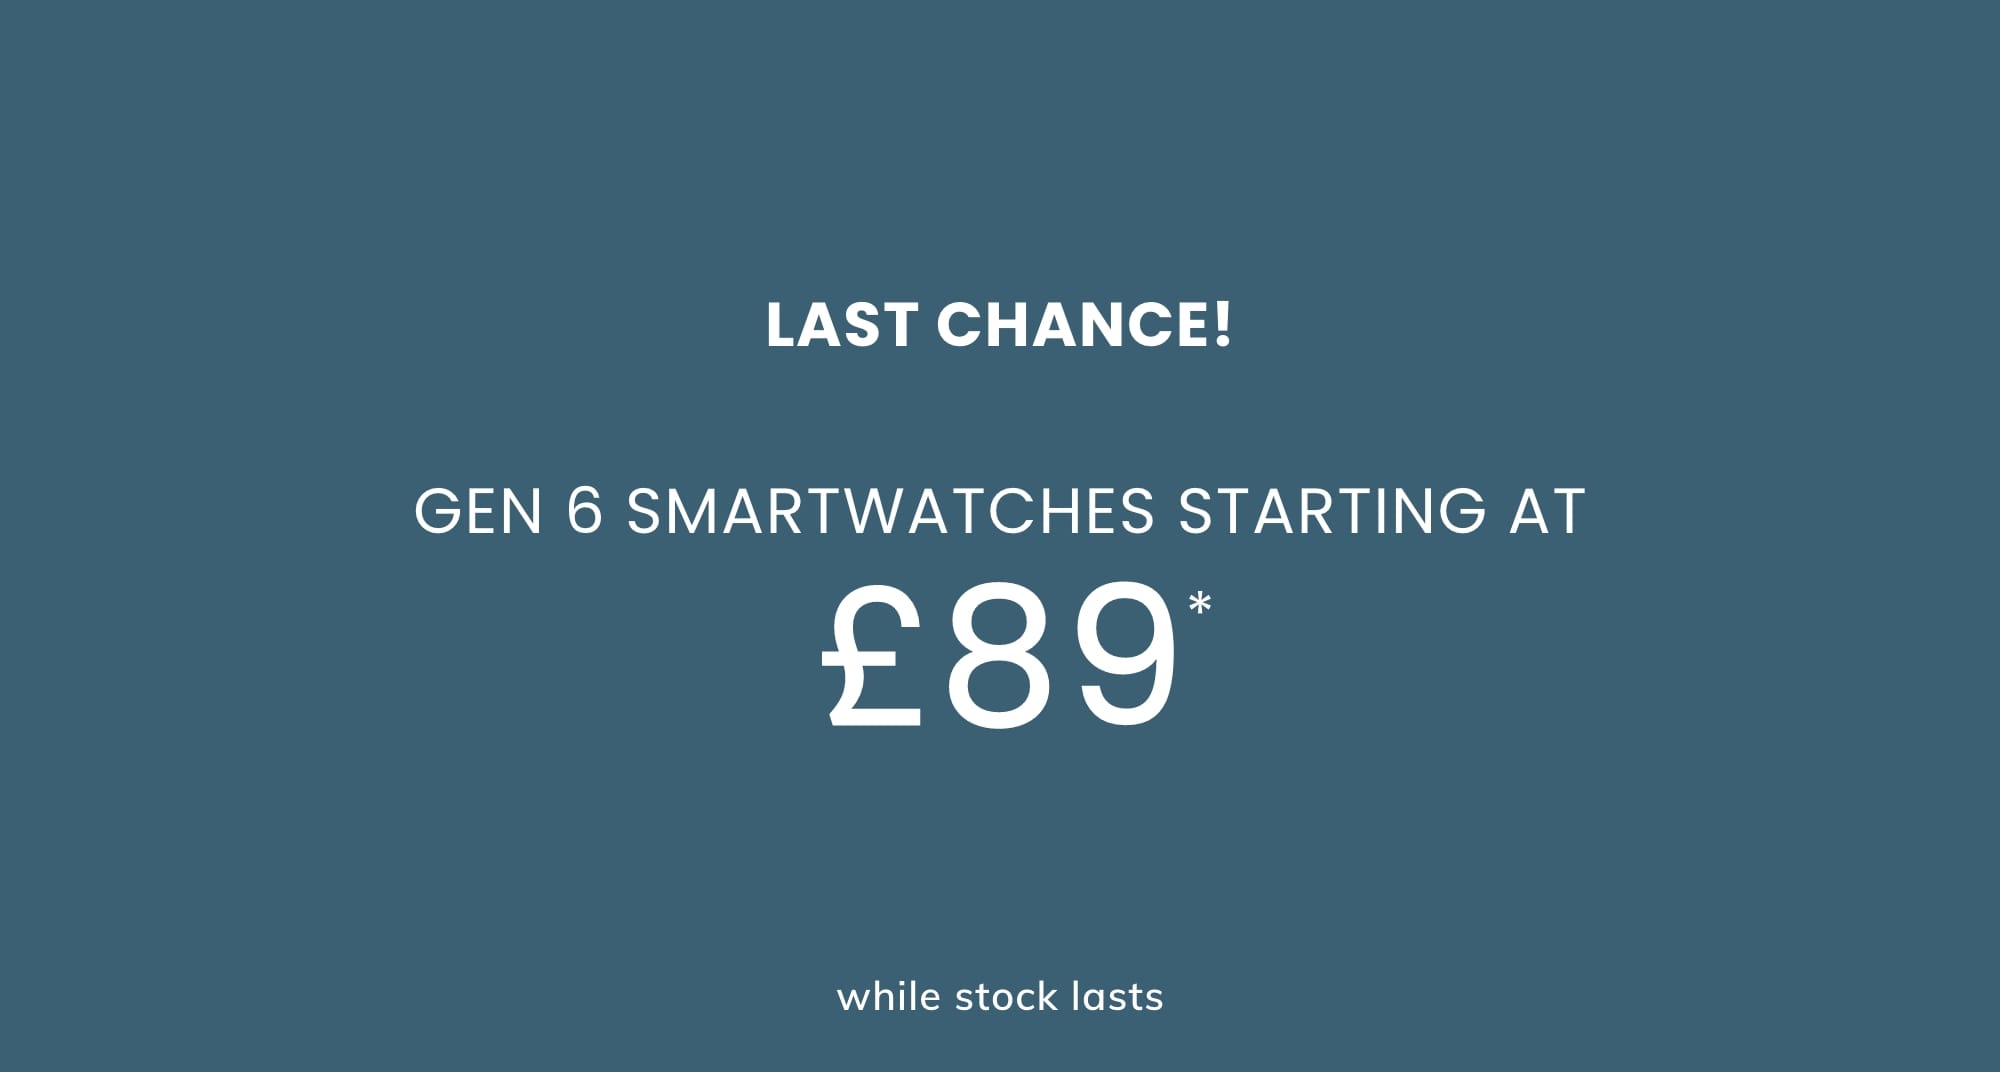 GEN 6 SMARTWATCHES STARTING AT £89*